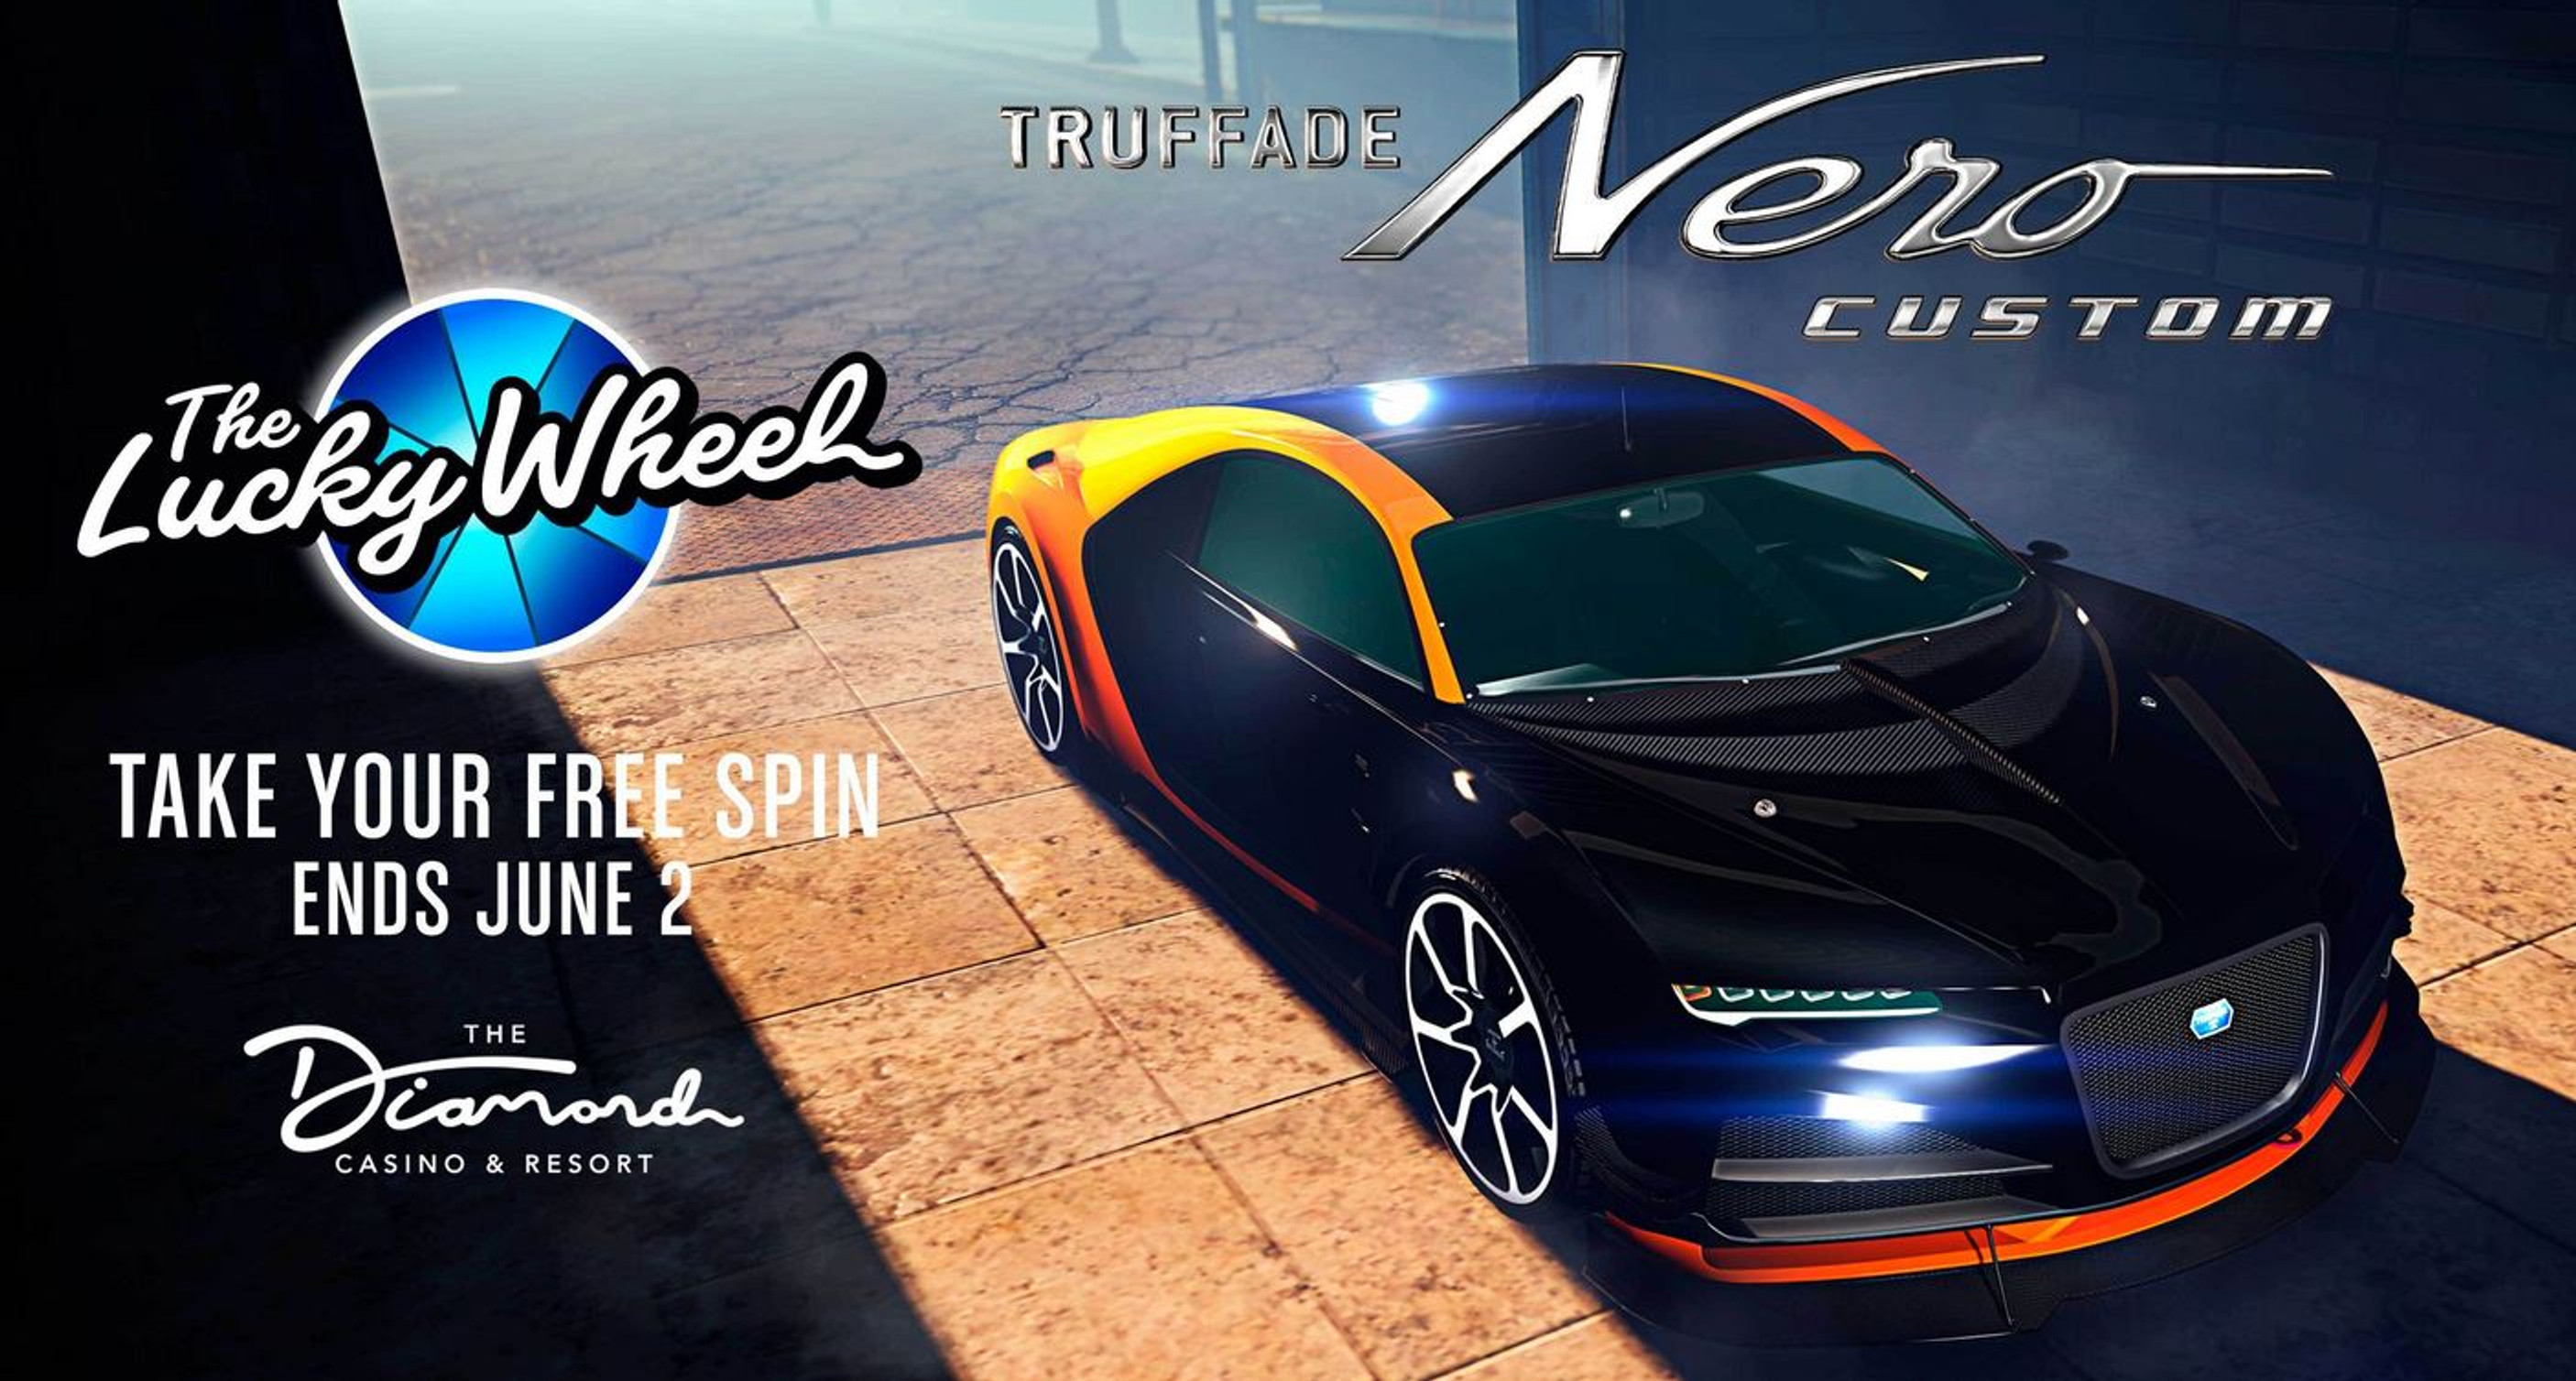 truffade-nero-custom-voiture-podium-casino-gta-5-online